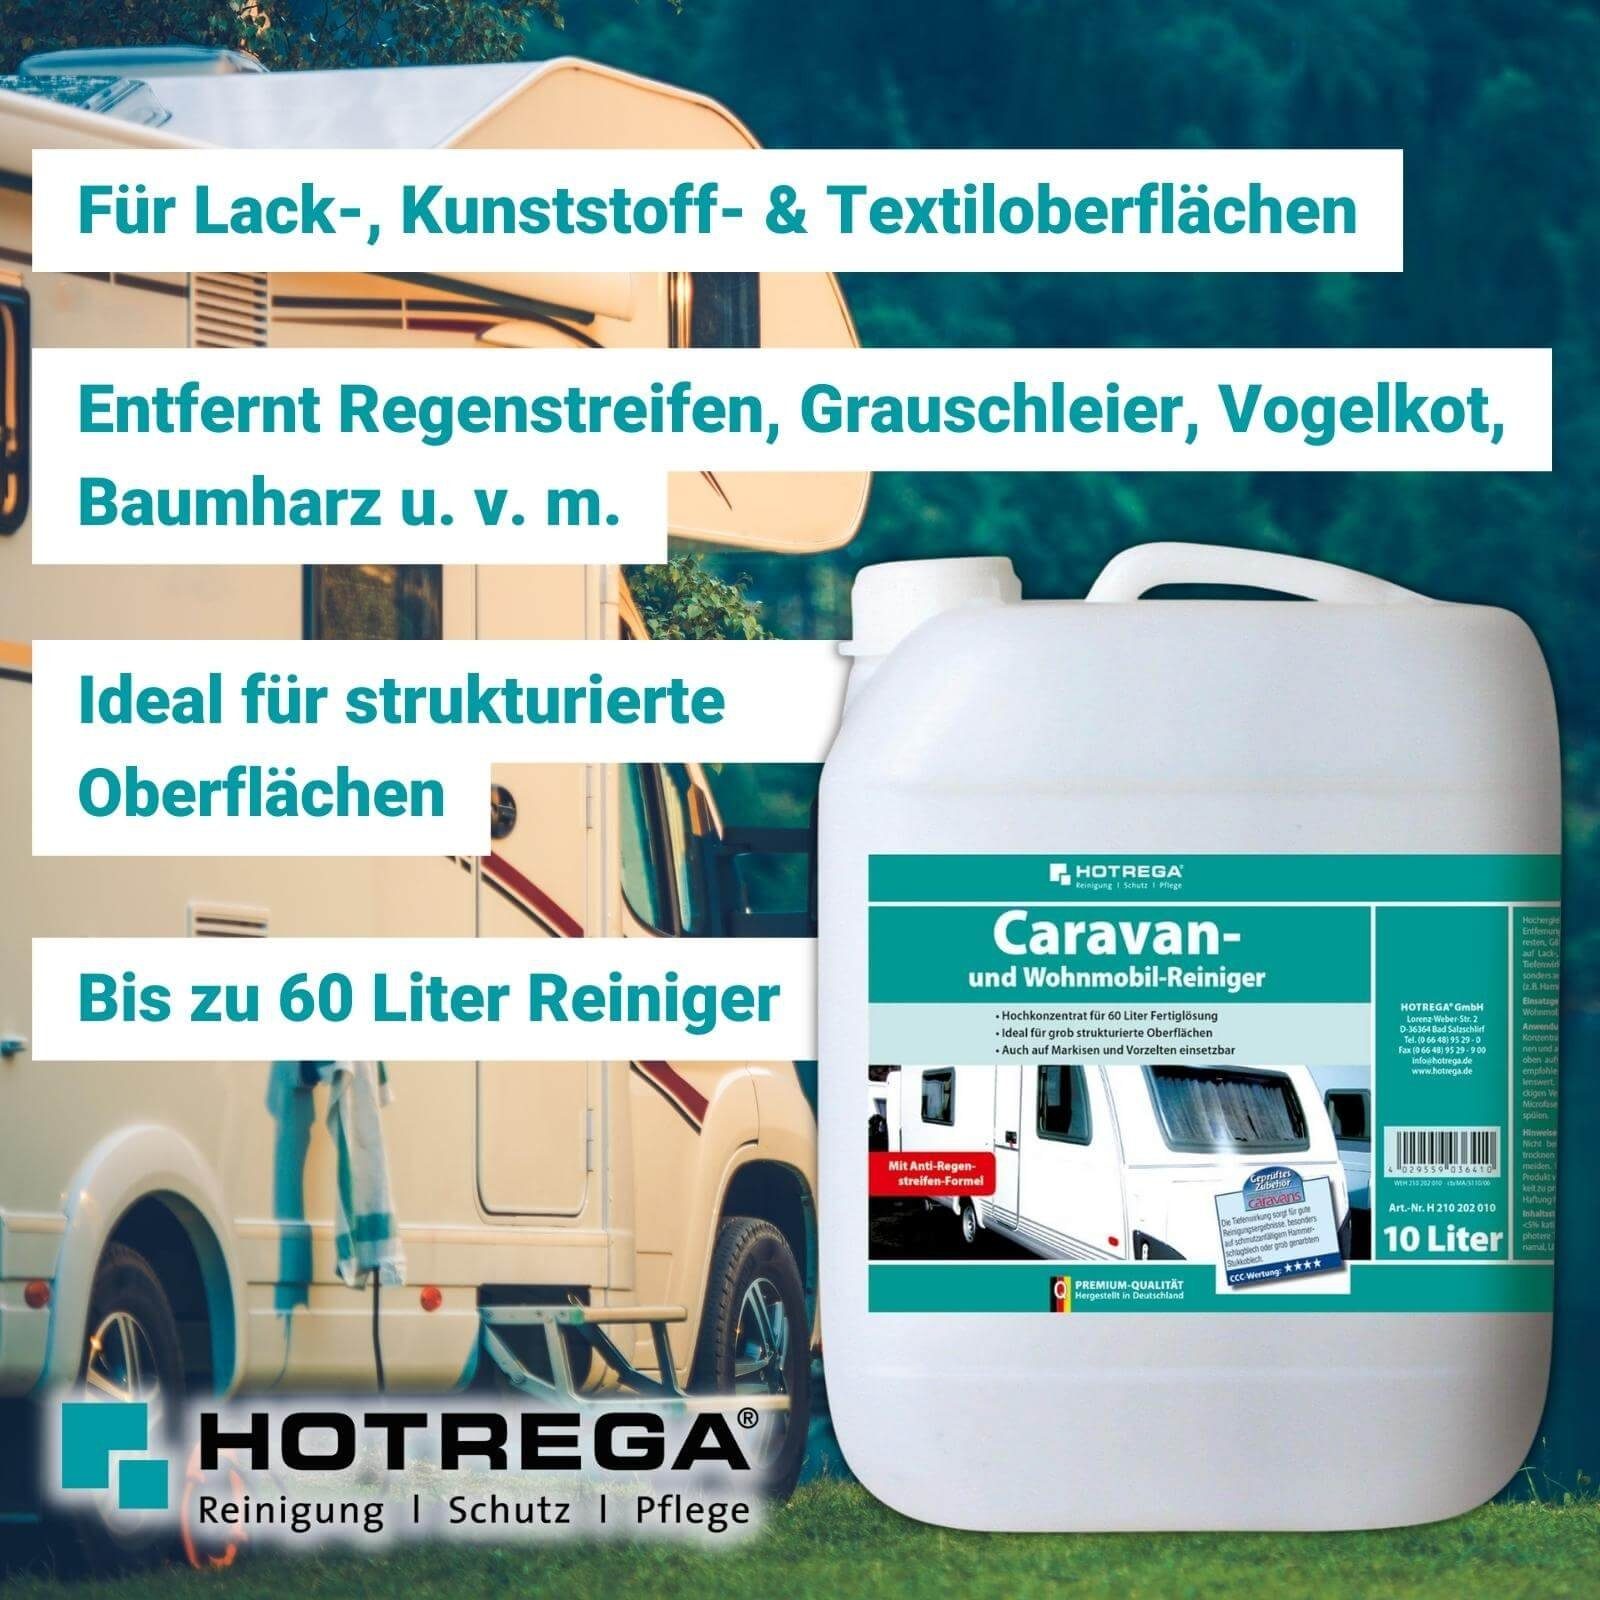 HOTREGA® Caravan & Wohnmobil Reiniger 10 Liter Universalreiniger